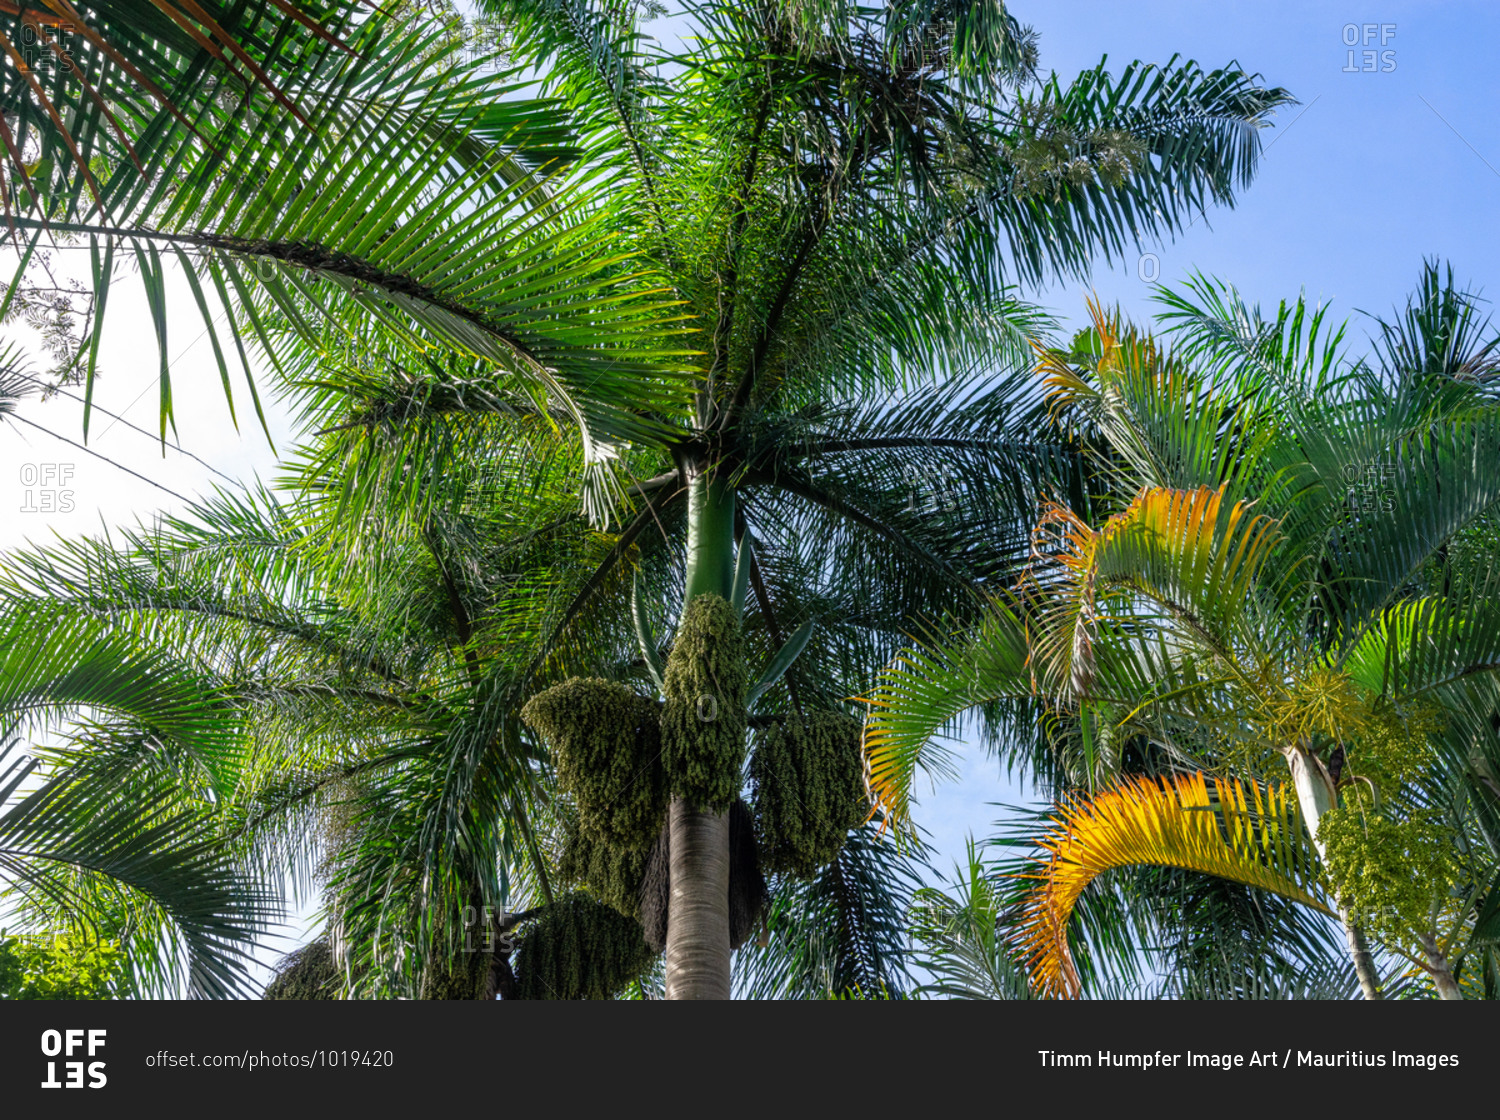 America, Caribbean, Greater Antilles, Dominican Republic, Jarabacoa, Los Calabazos, Sonido del Yaque Eco Lodge, palm trees against a blue sky